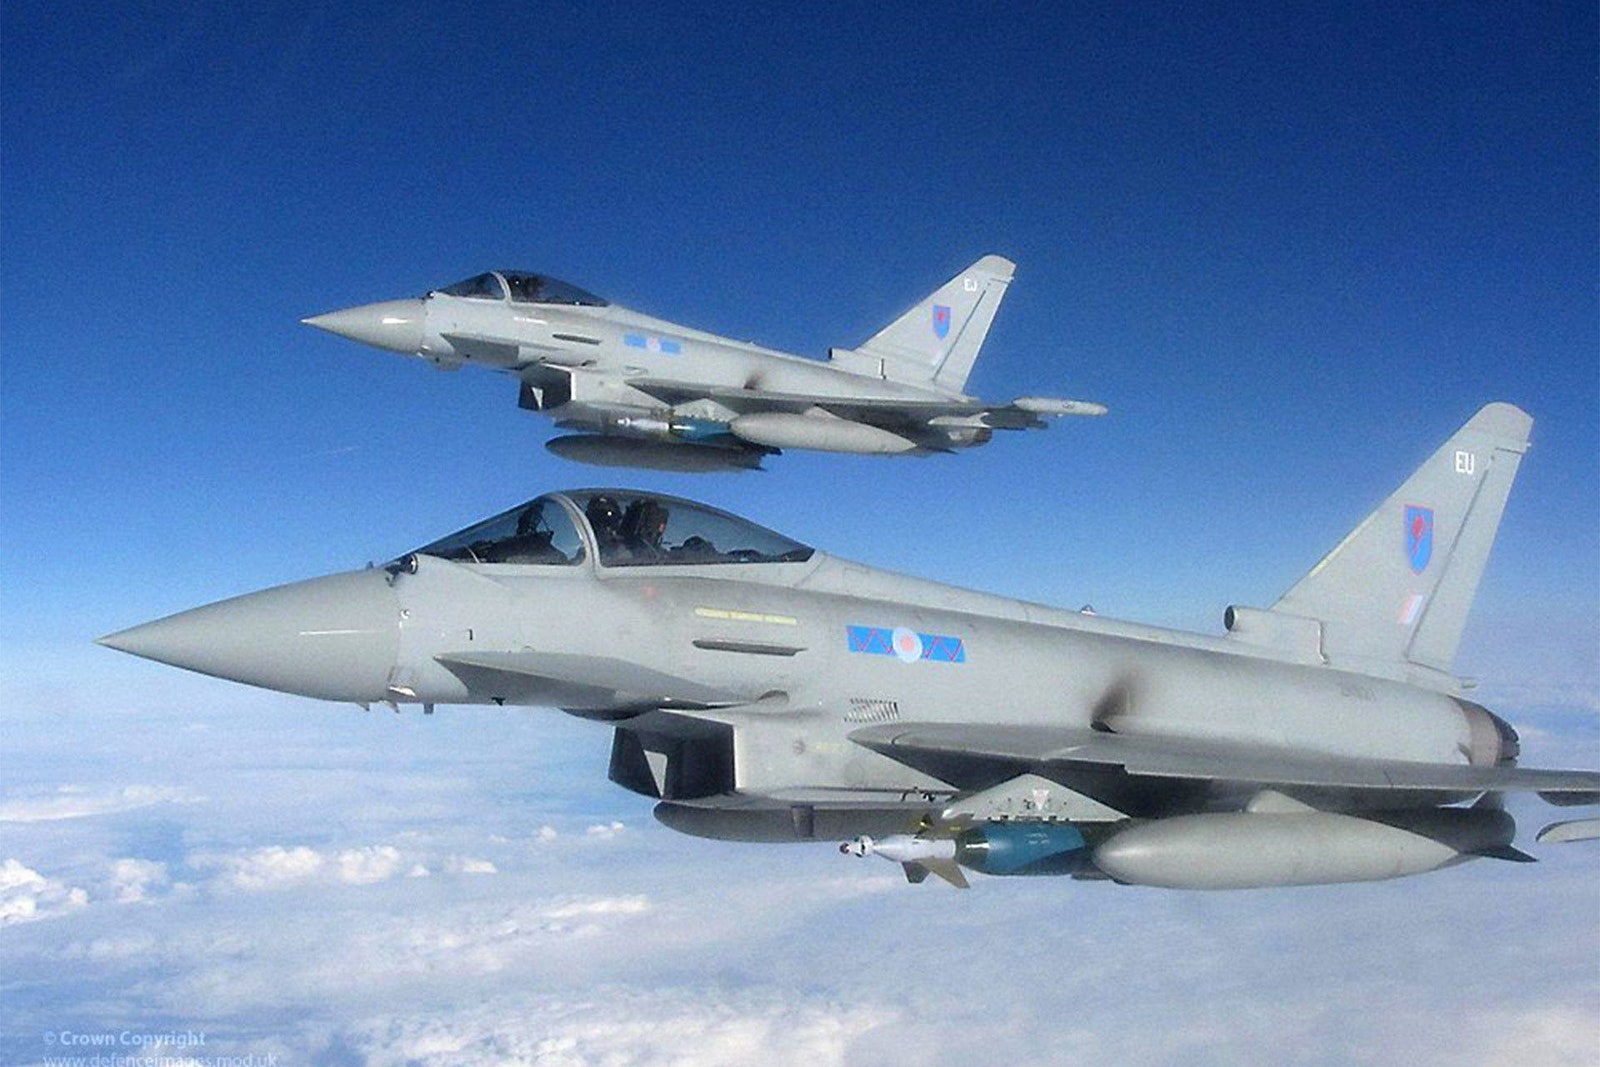 RAF Jets Scrambled Twice to Intercept Russian Aircraft